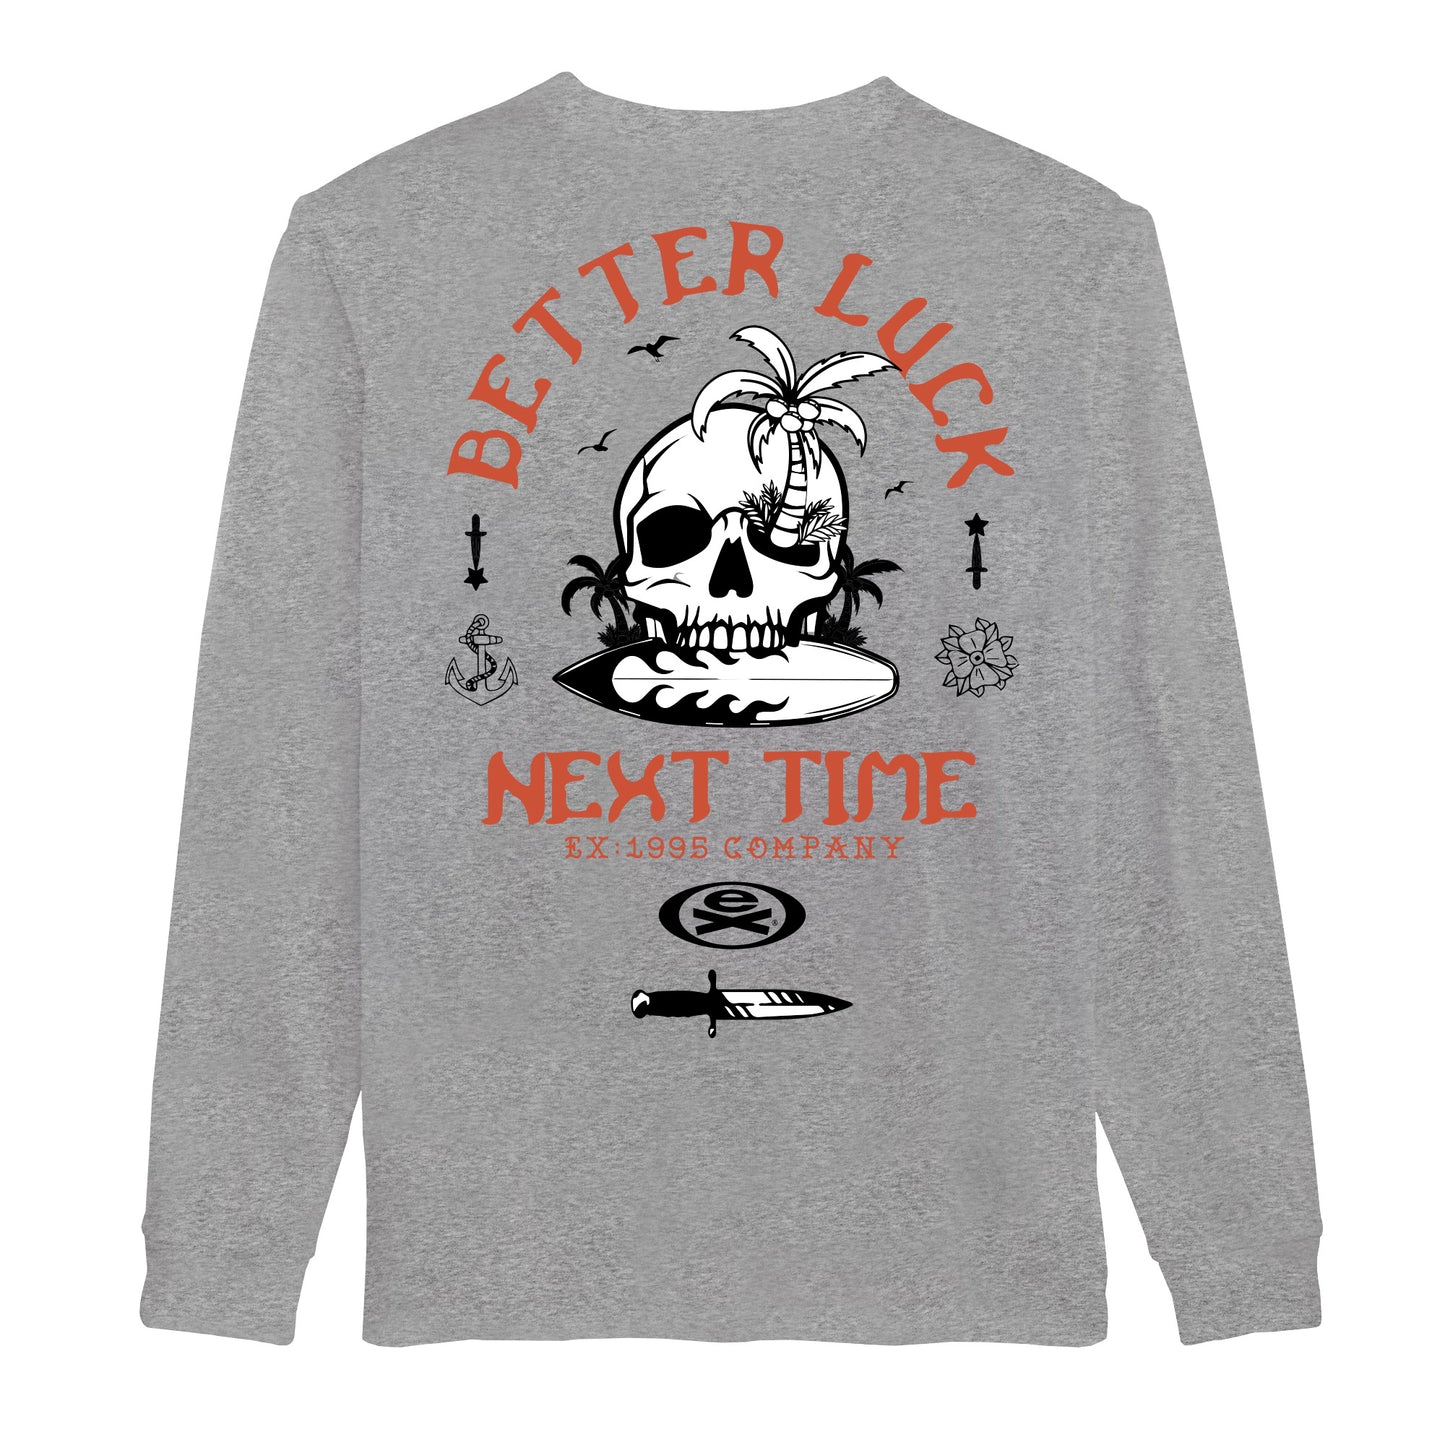 Better Luck Long Sleeve T-Shirt - Heather Grey